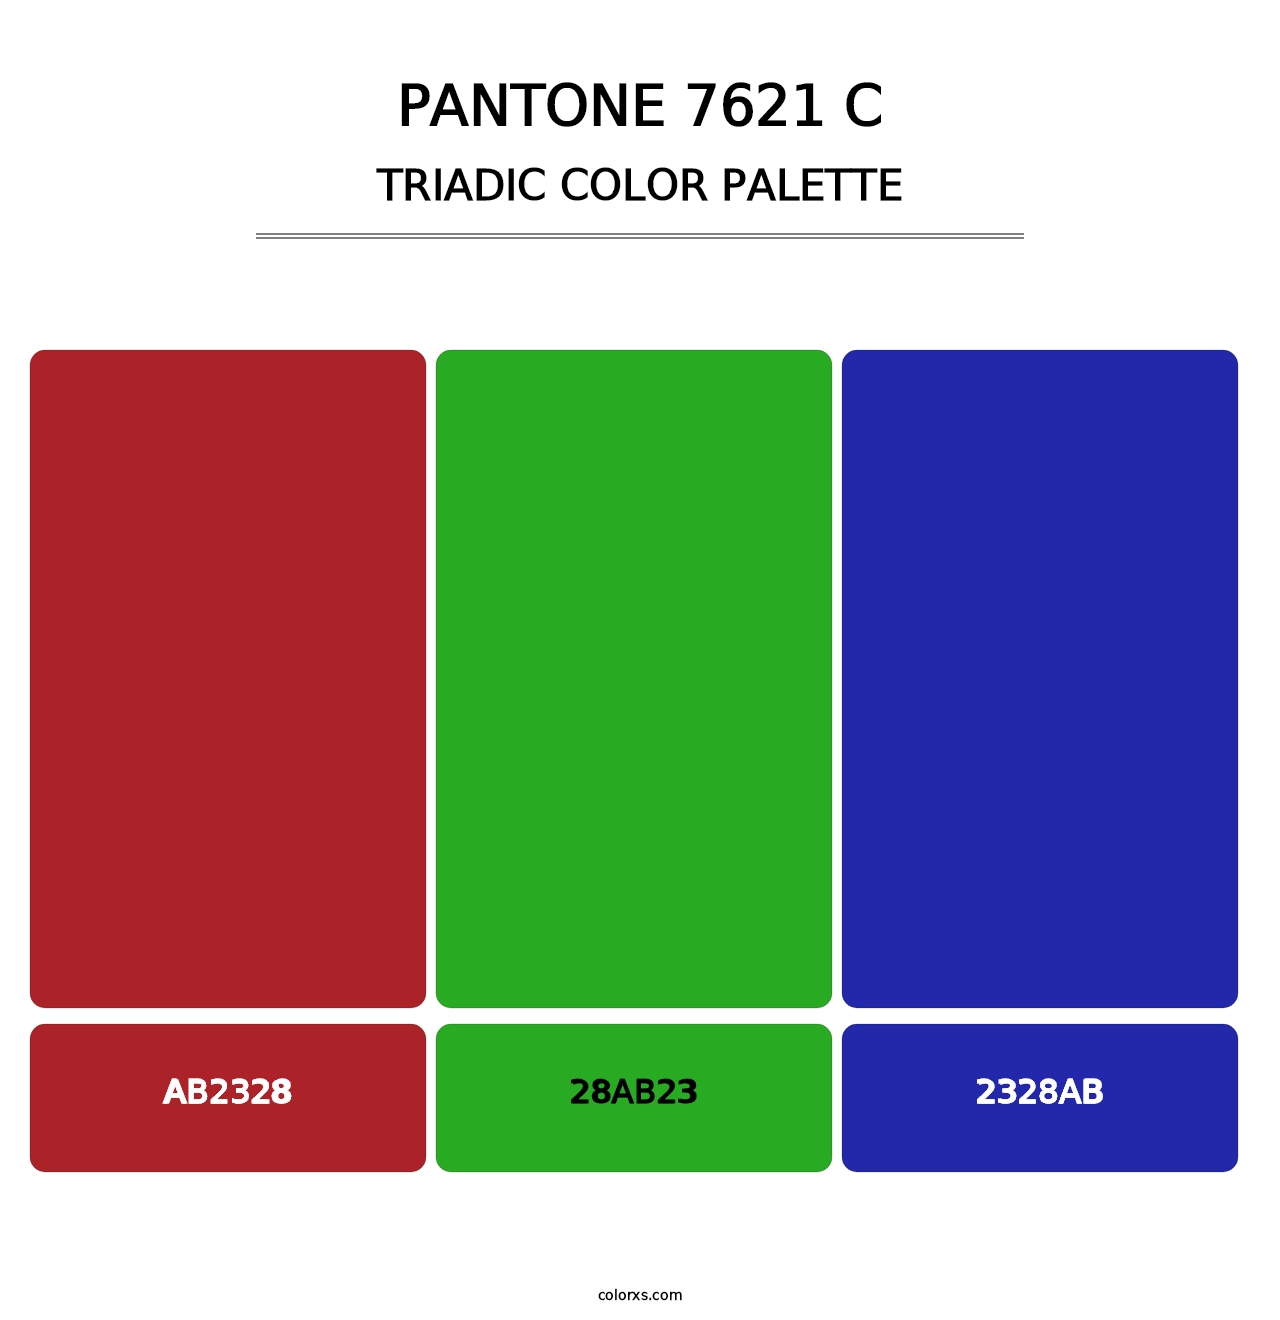 PANTONE 7621 C - Triadic Color Palette